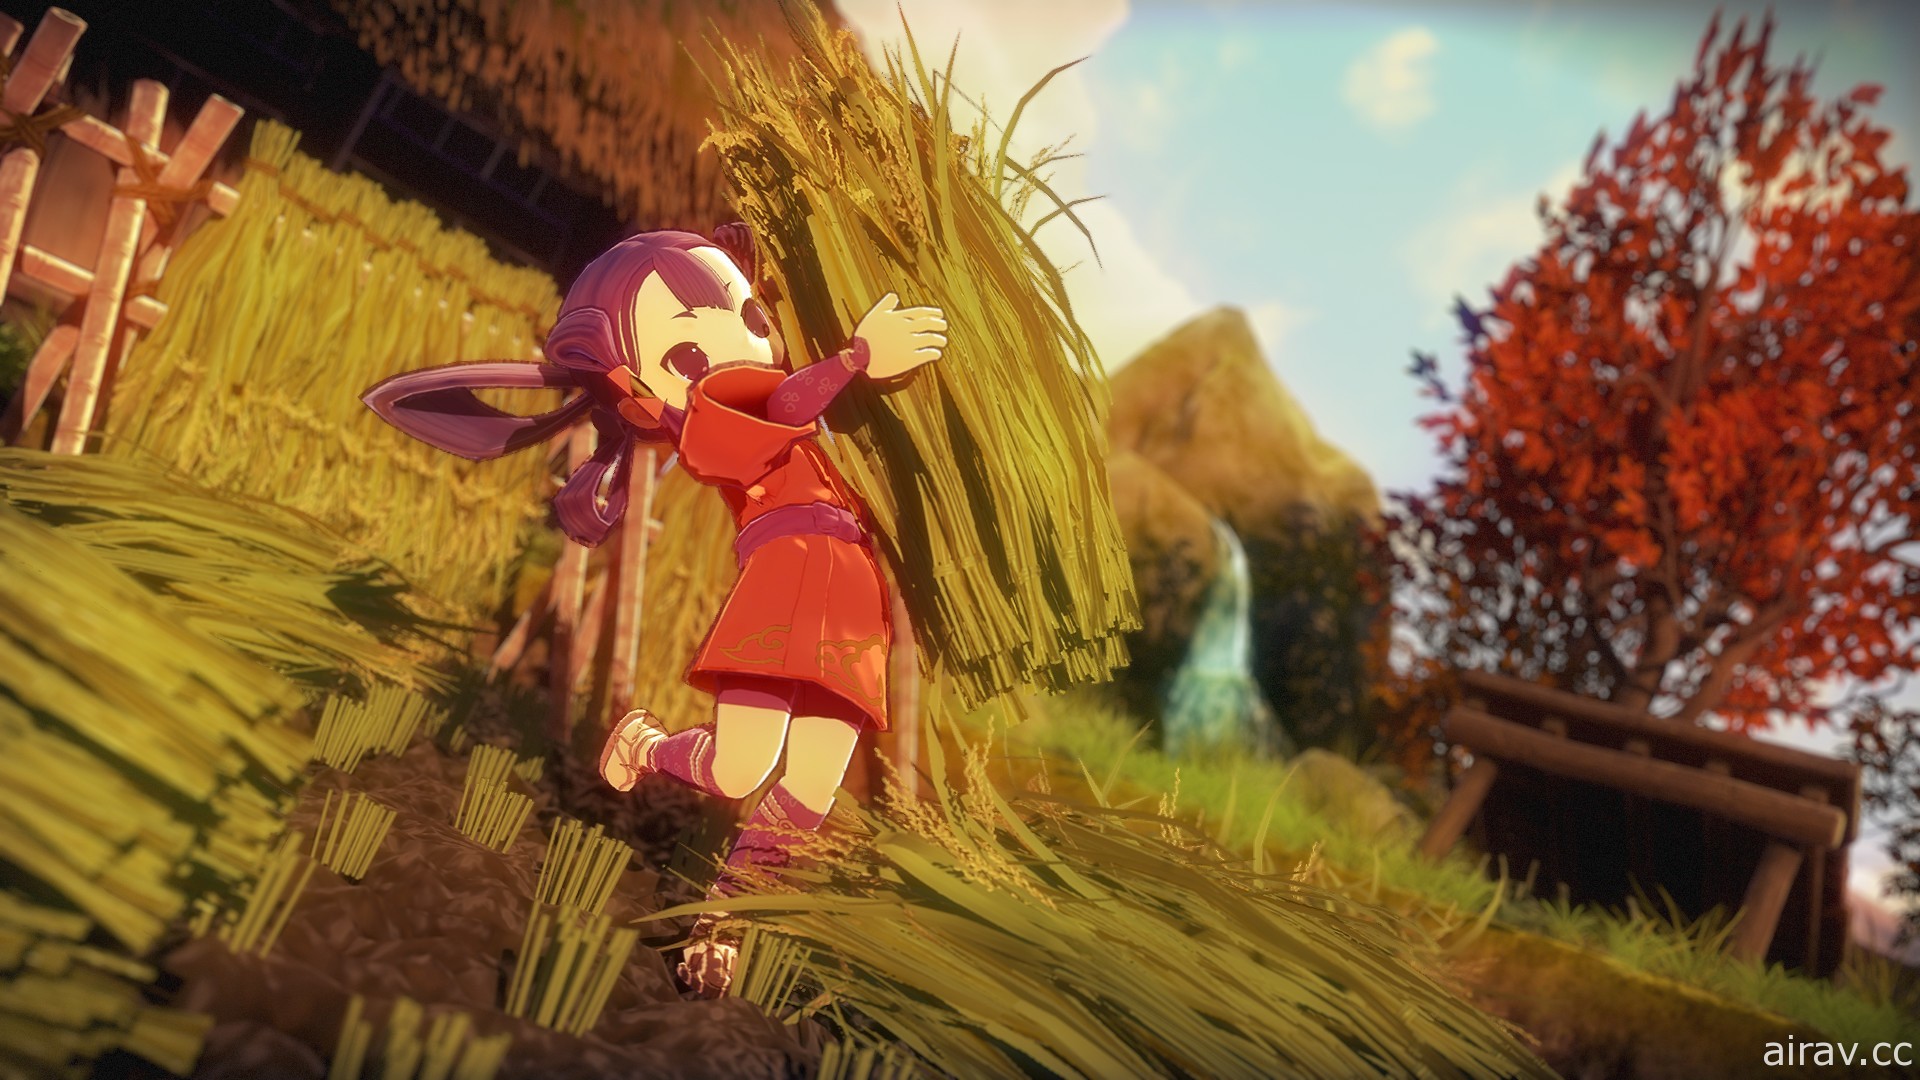 種稻變強大的和風動作 RPG《天穗之咲稻姬》公開 PC 版 Steam 頁面與繁體中文畫面